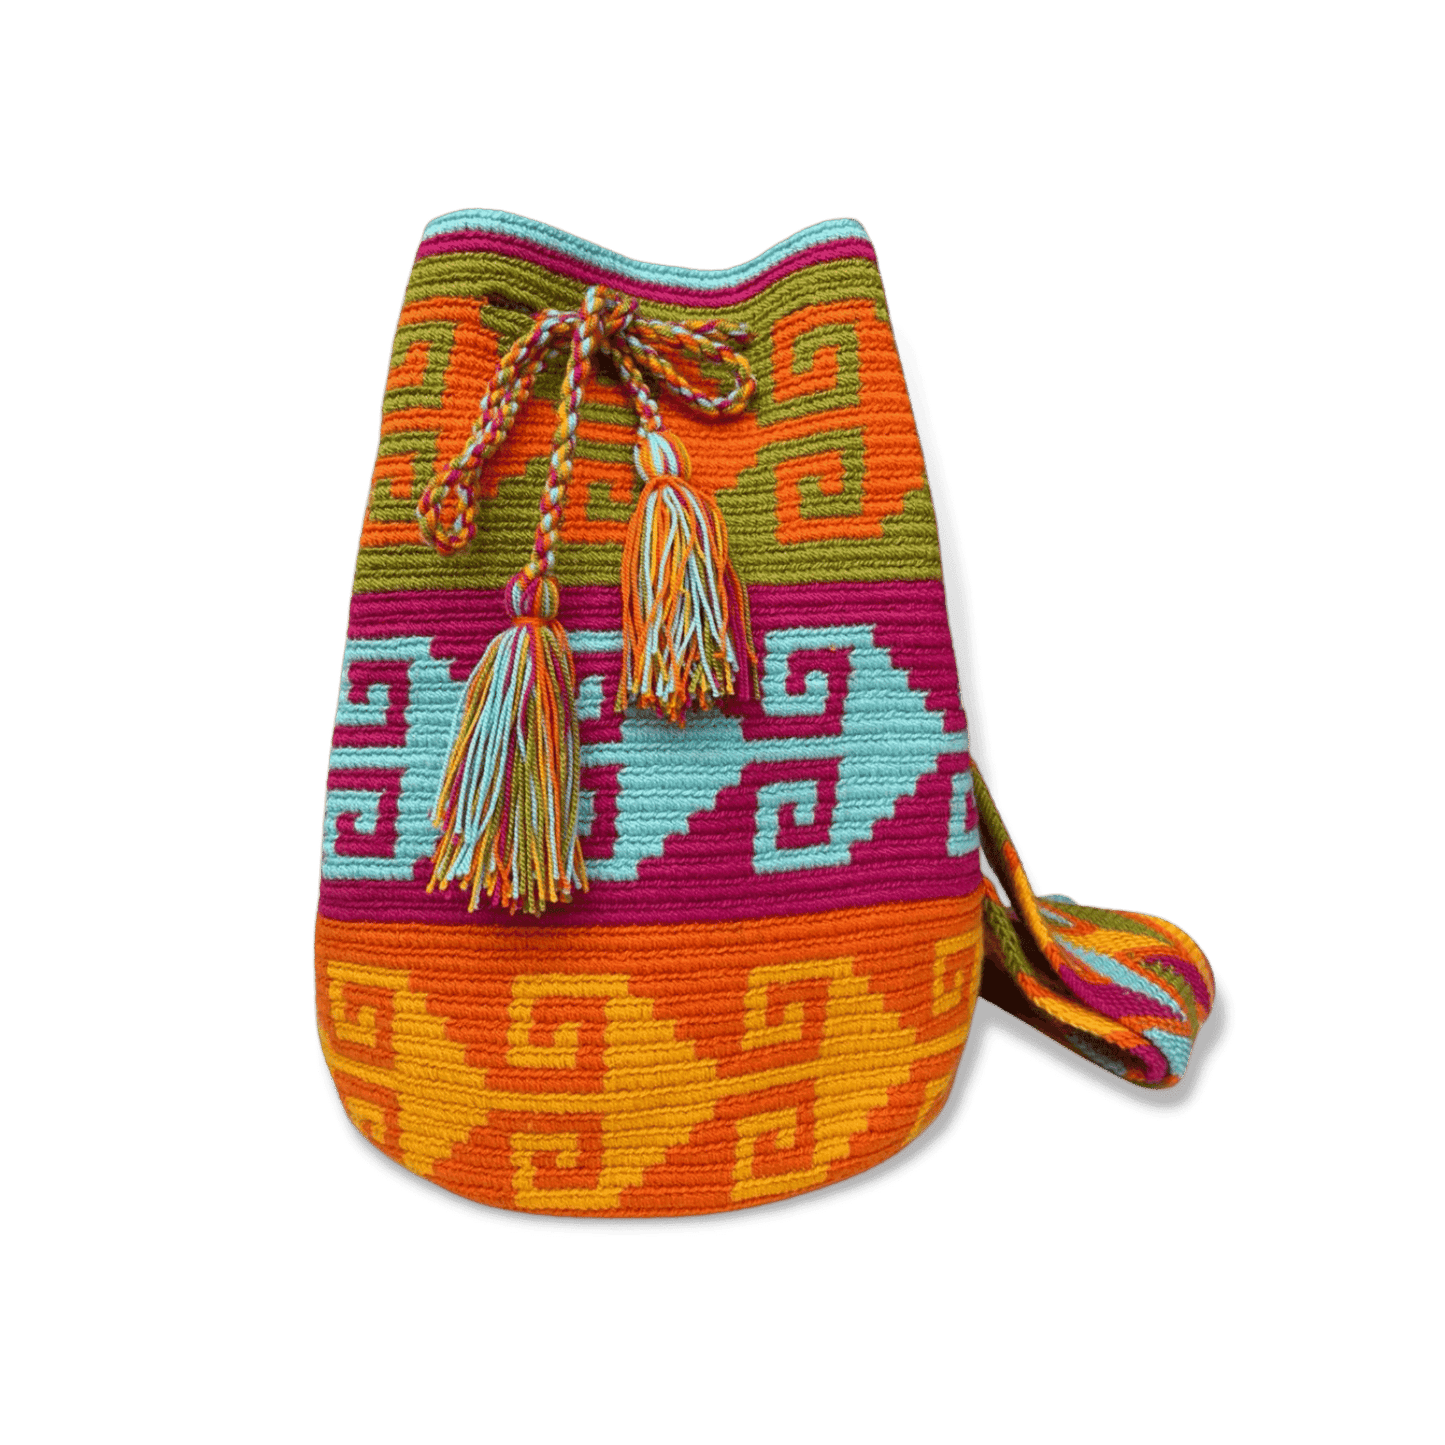 Mochila wayuu original tejida a mano con un diseño precolombino de colores vivos